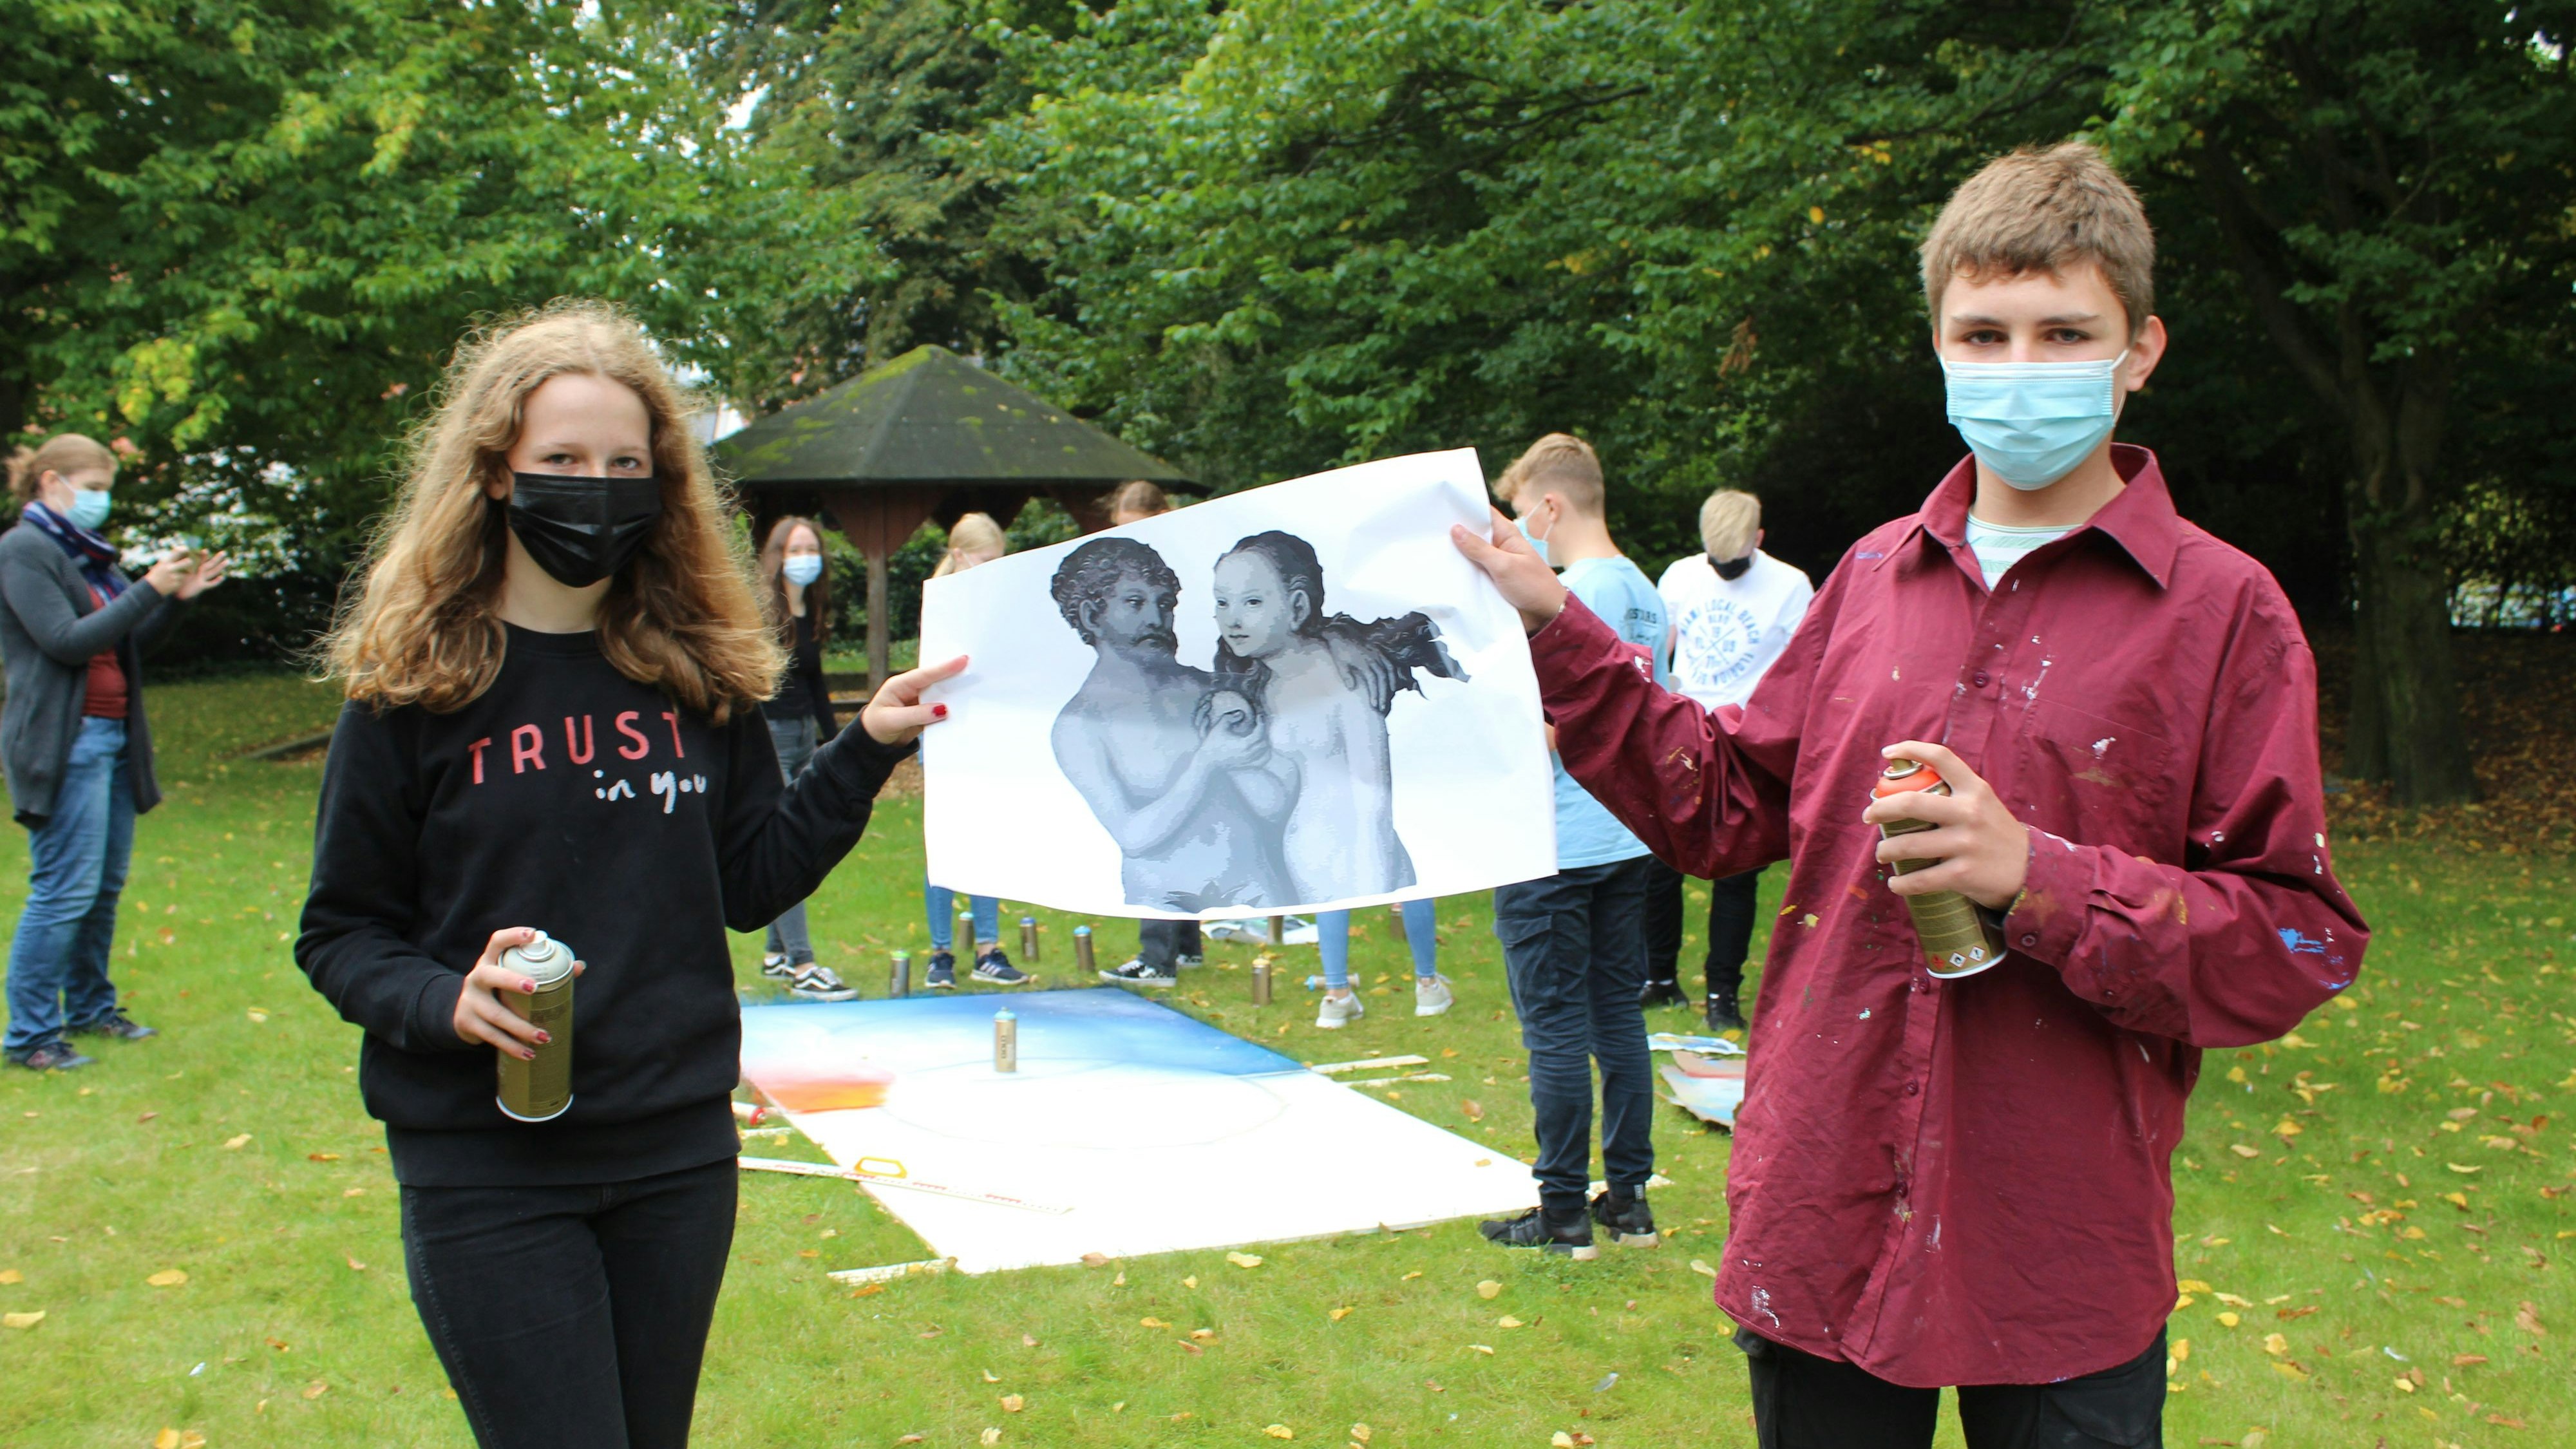 Lisa und Emil sind im Team "Adam und Eva" und haben Schablonen zum Sprayen benutzt. &nbsp;Foto: Heinzel